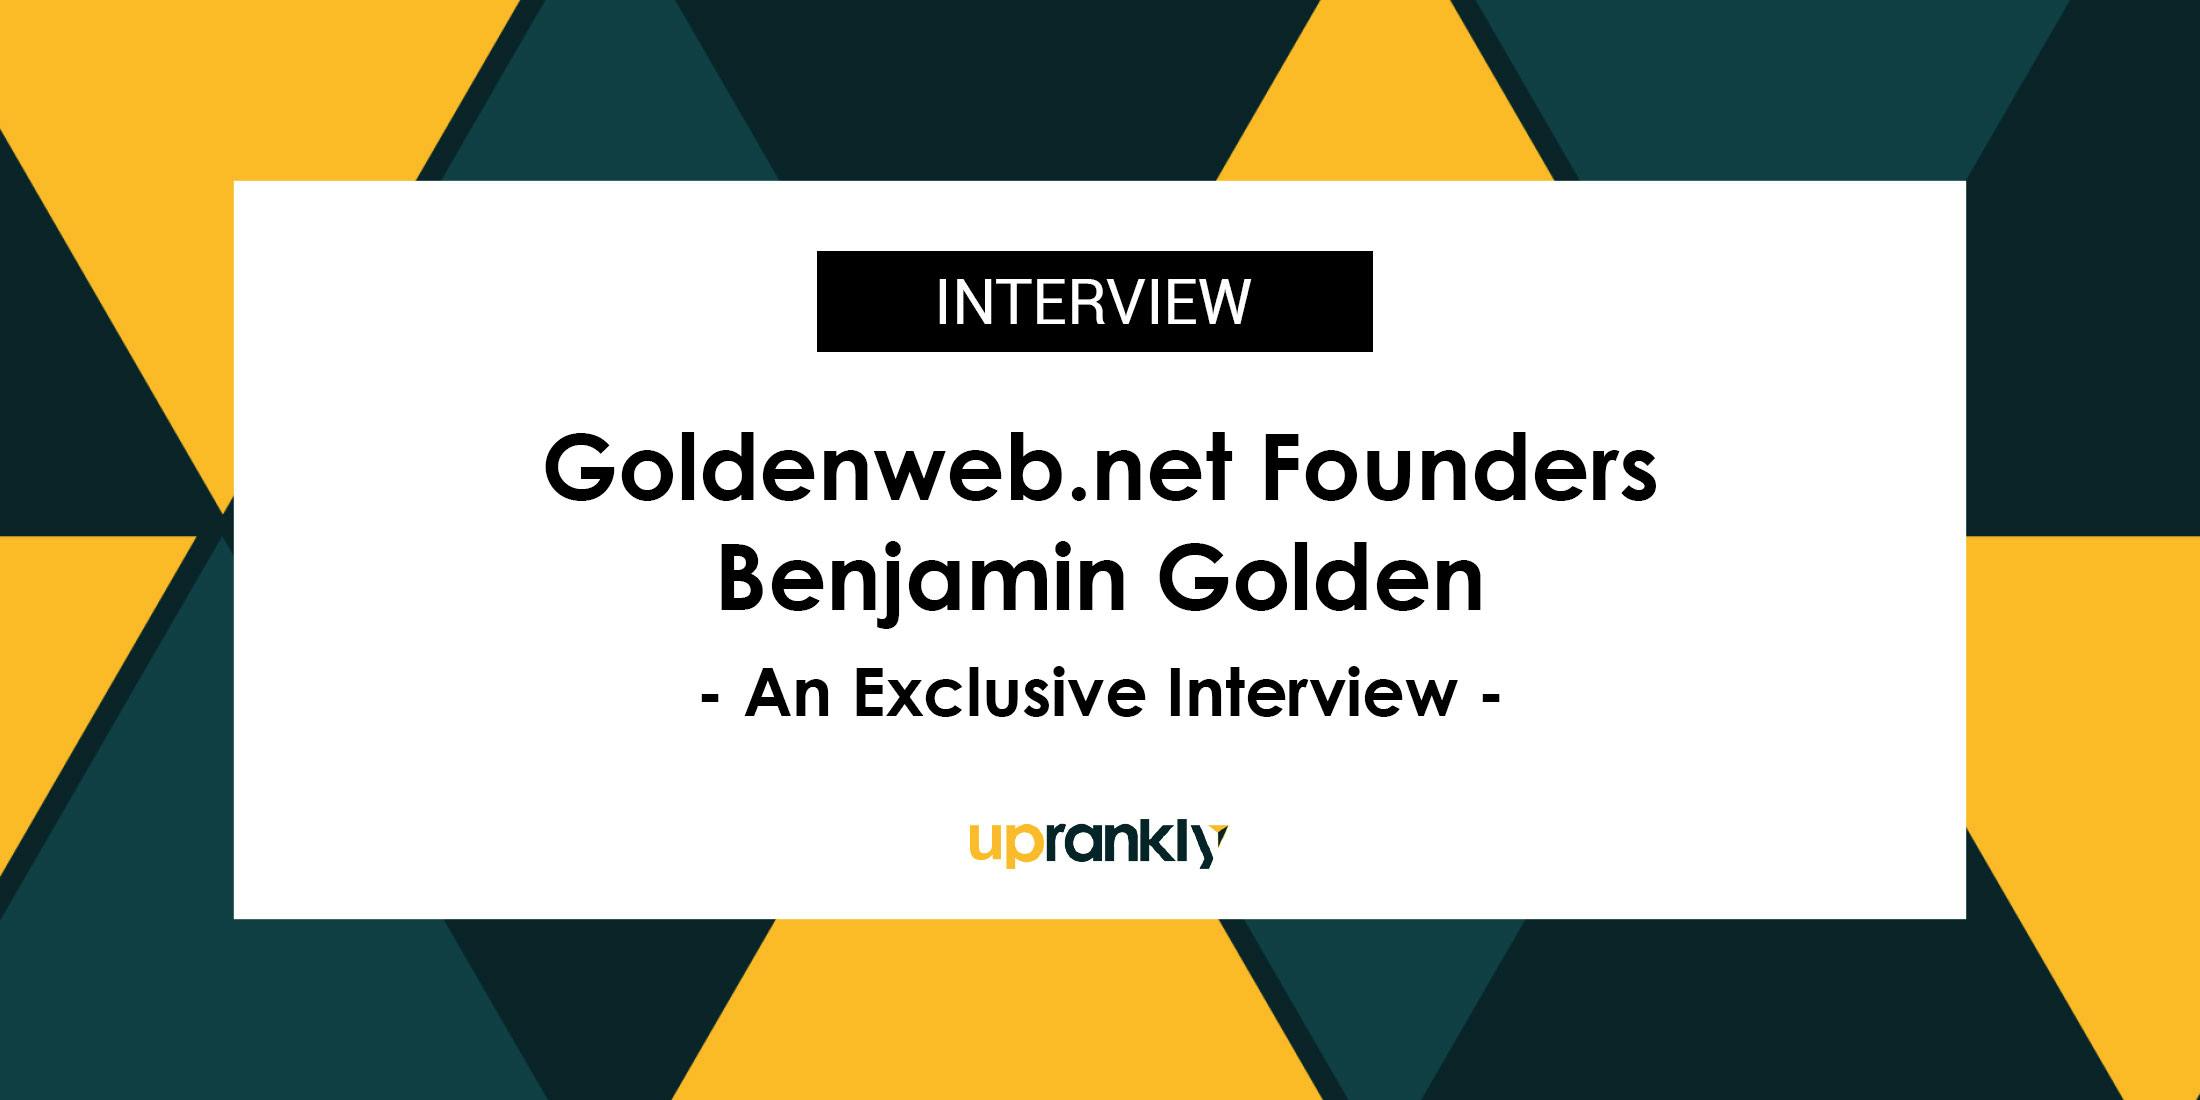 Goldenweb.net Founder Benjamin Golden: An Exclusive Interview